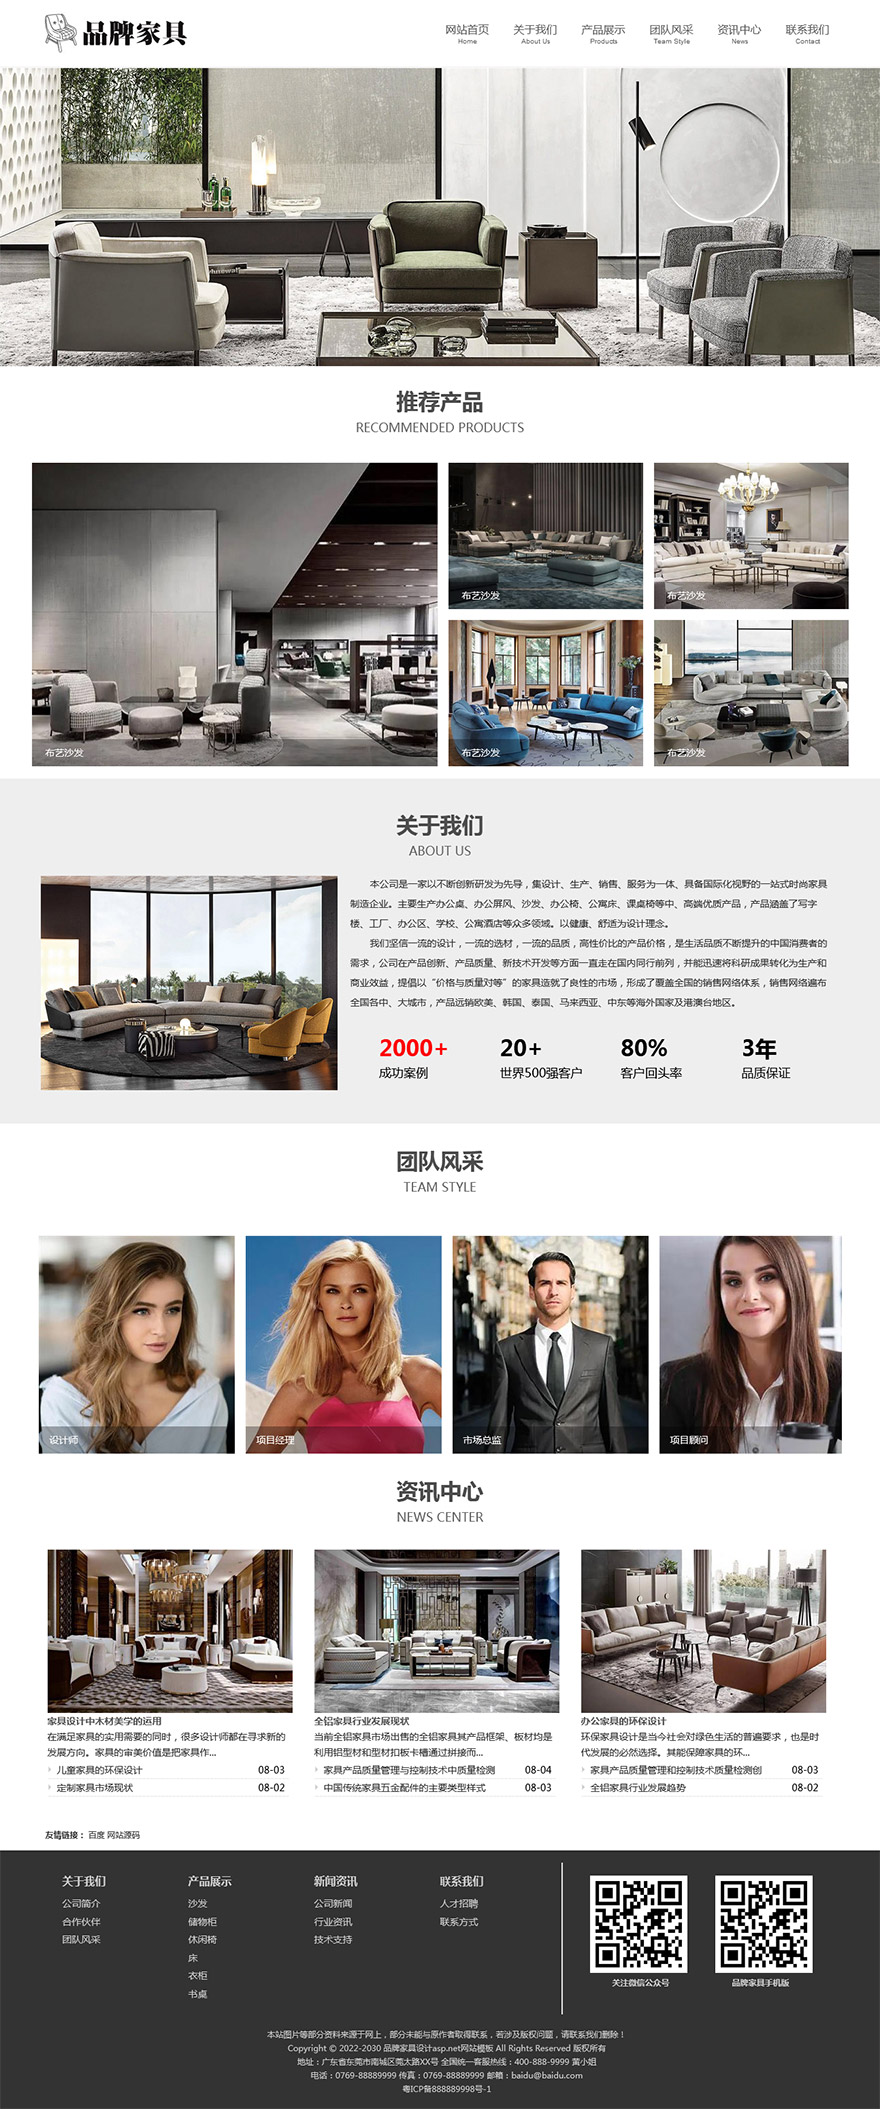 品牌家具设计asp.net网站模板